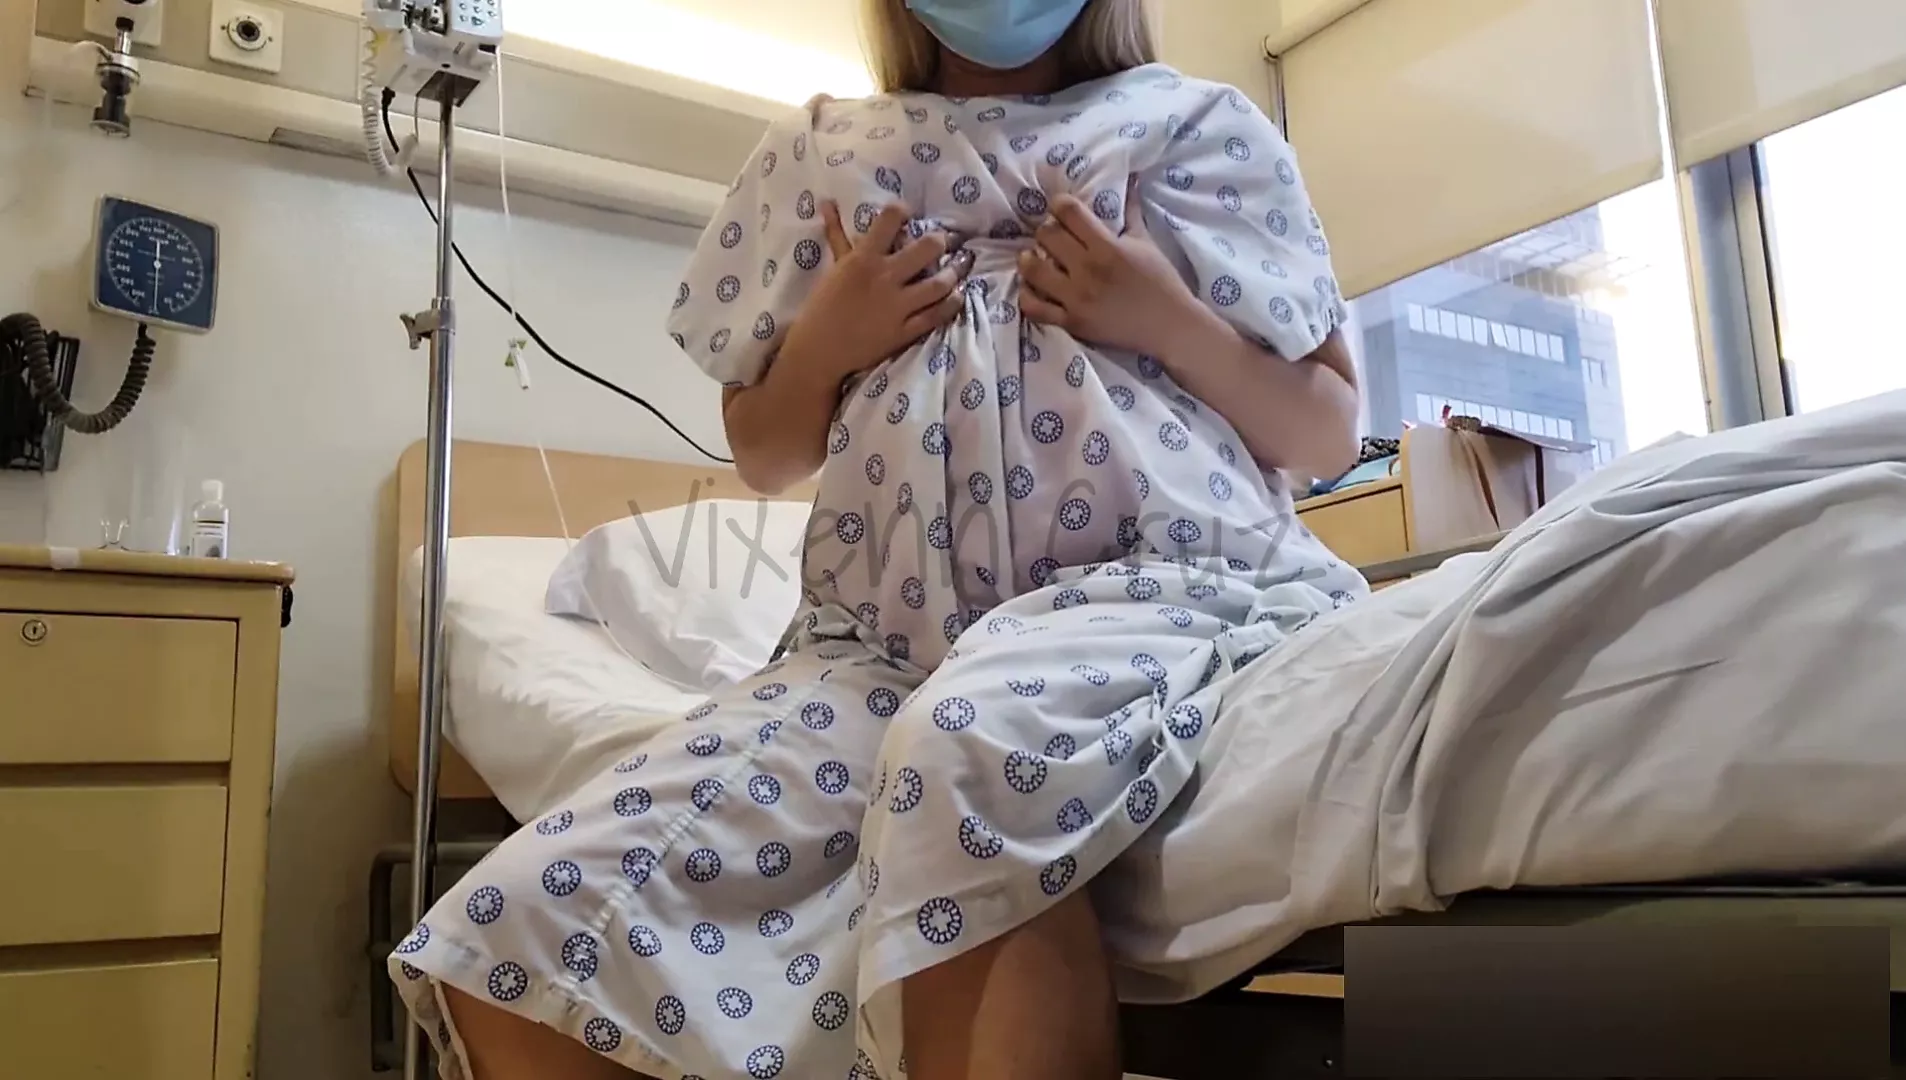 Público arriesgado - Paciente cachonda eyacula en la cama del hospital - Viral